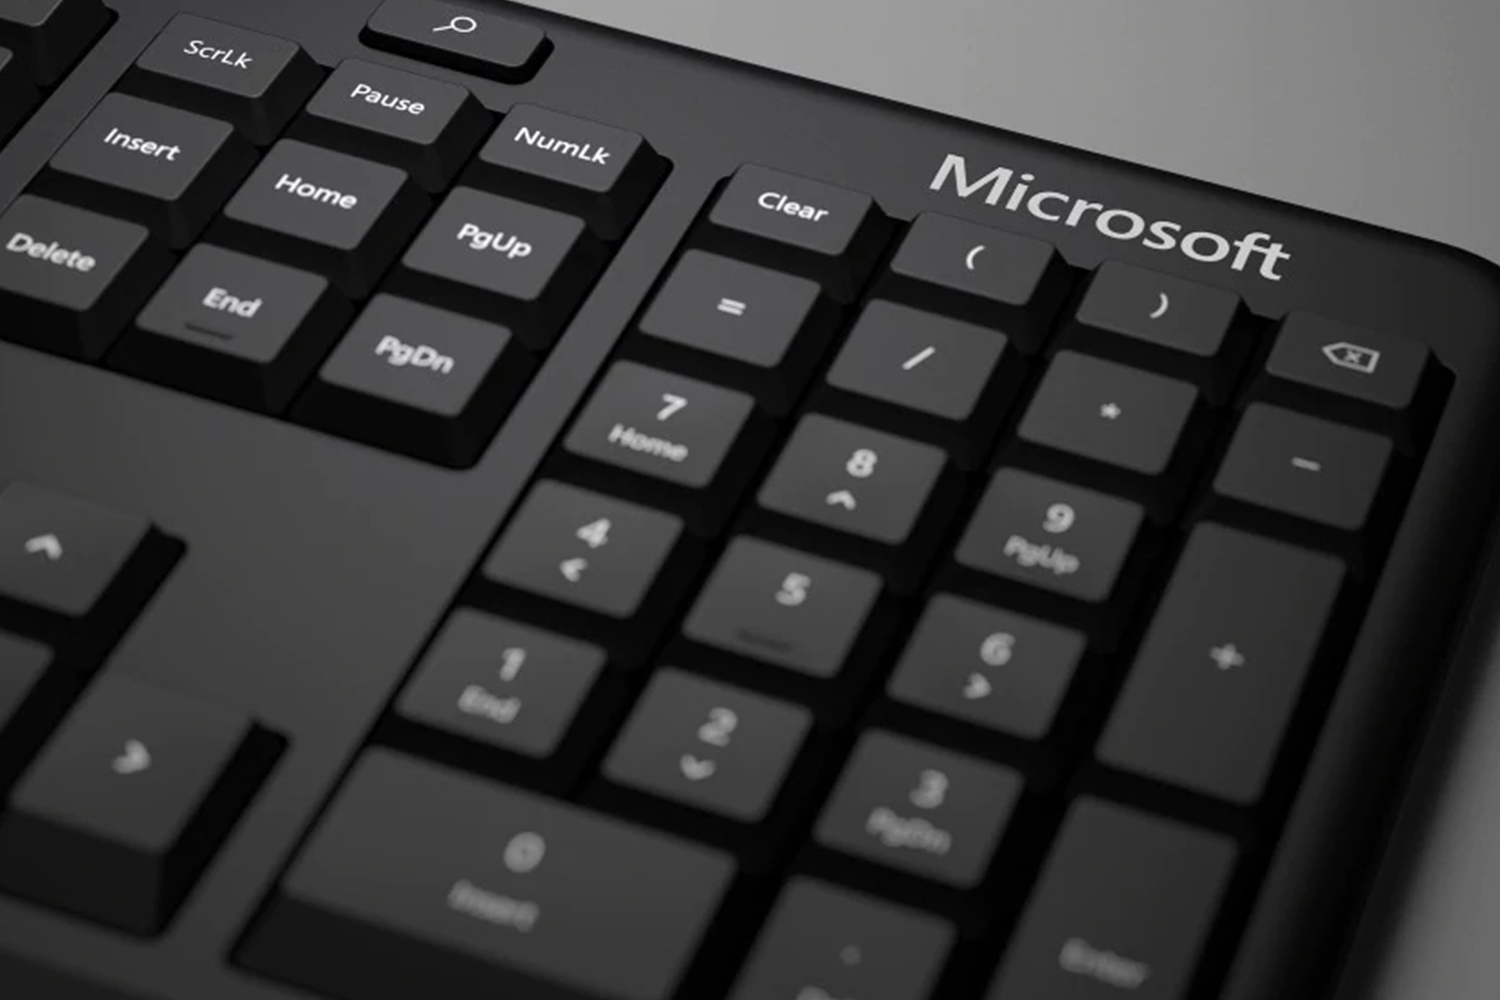 microsoft wireless keyboard 5000 function keys